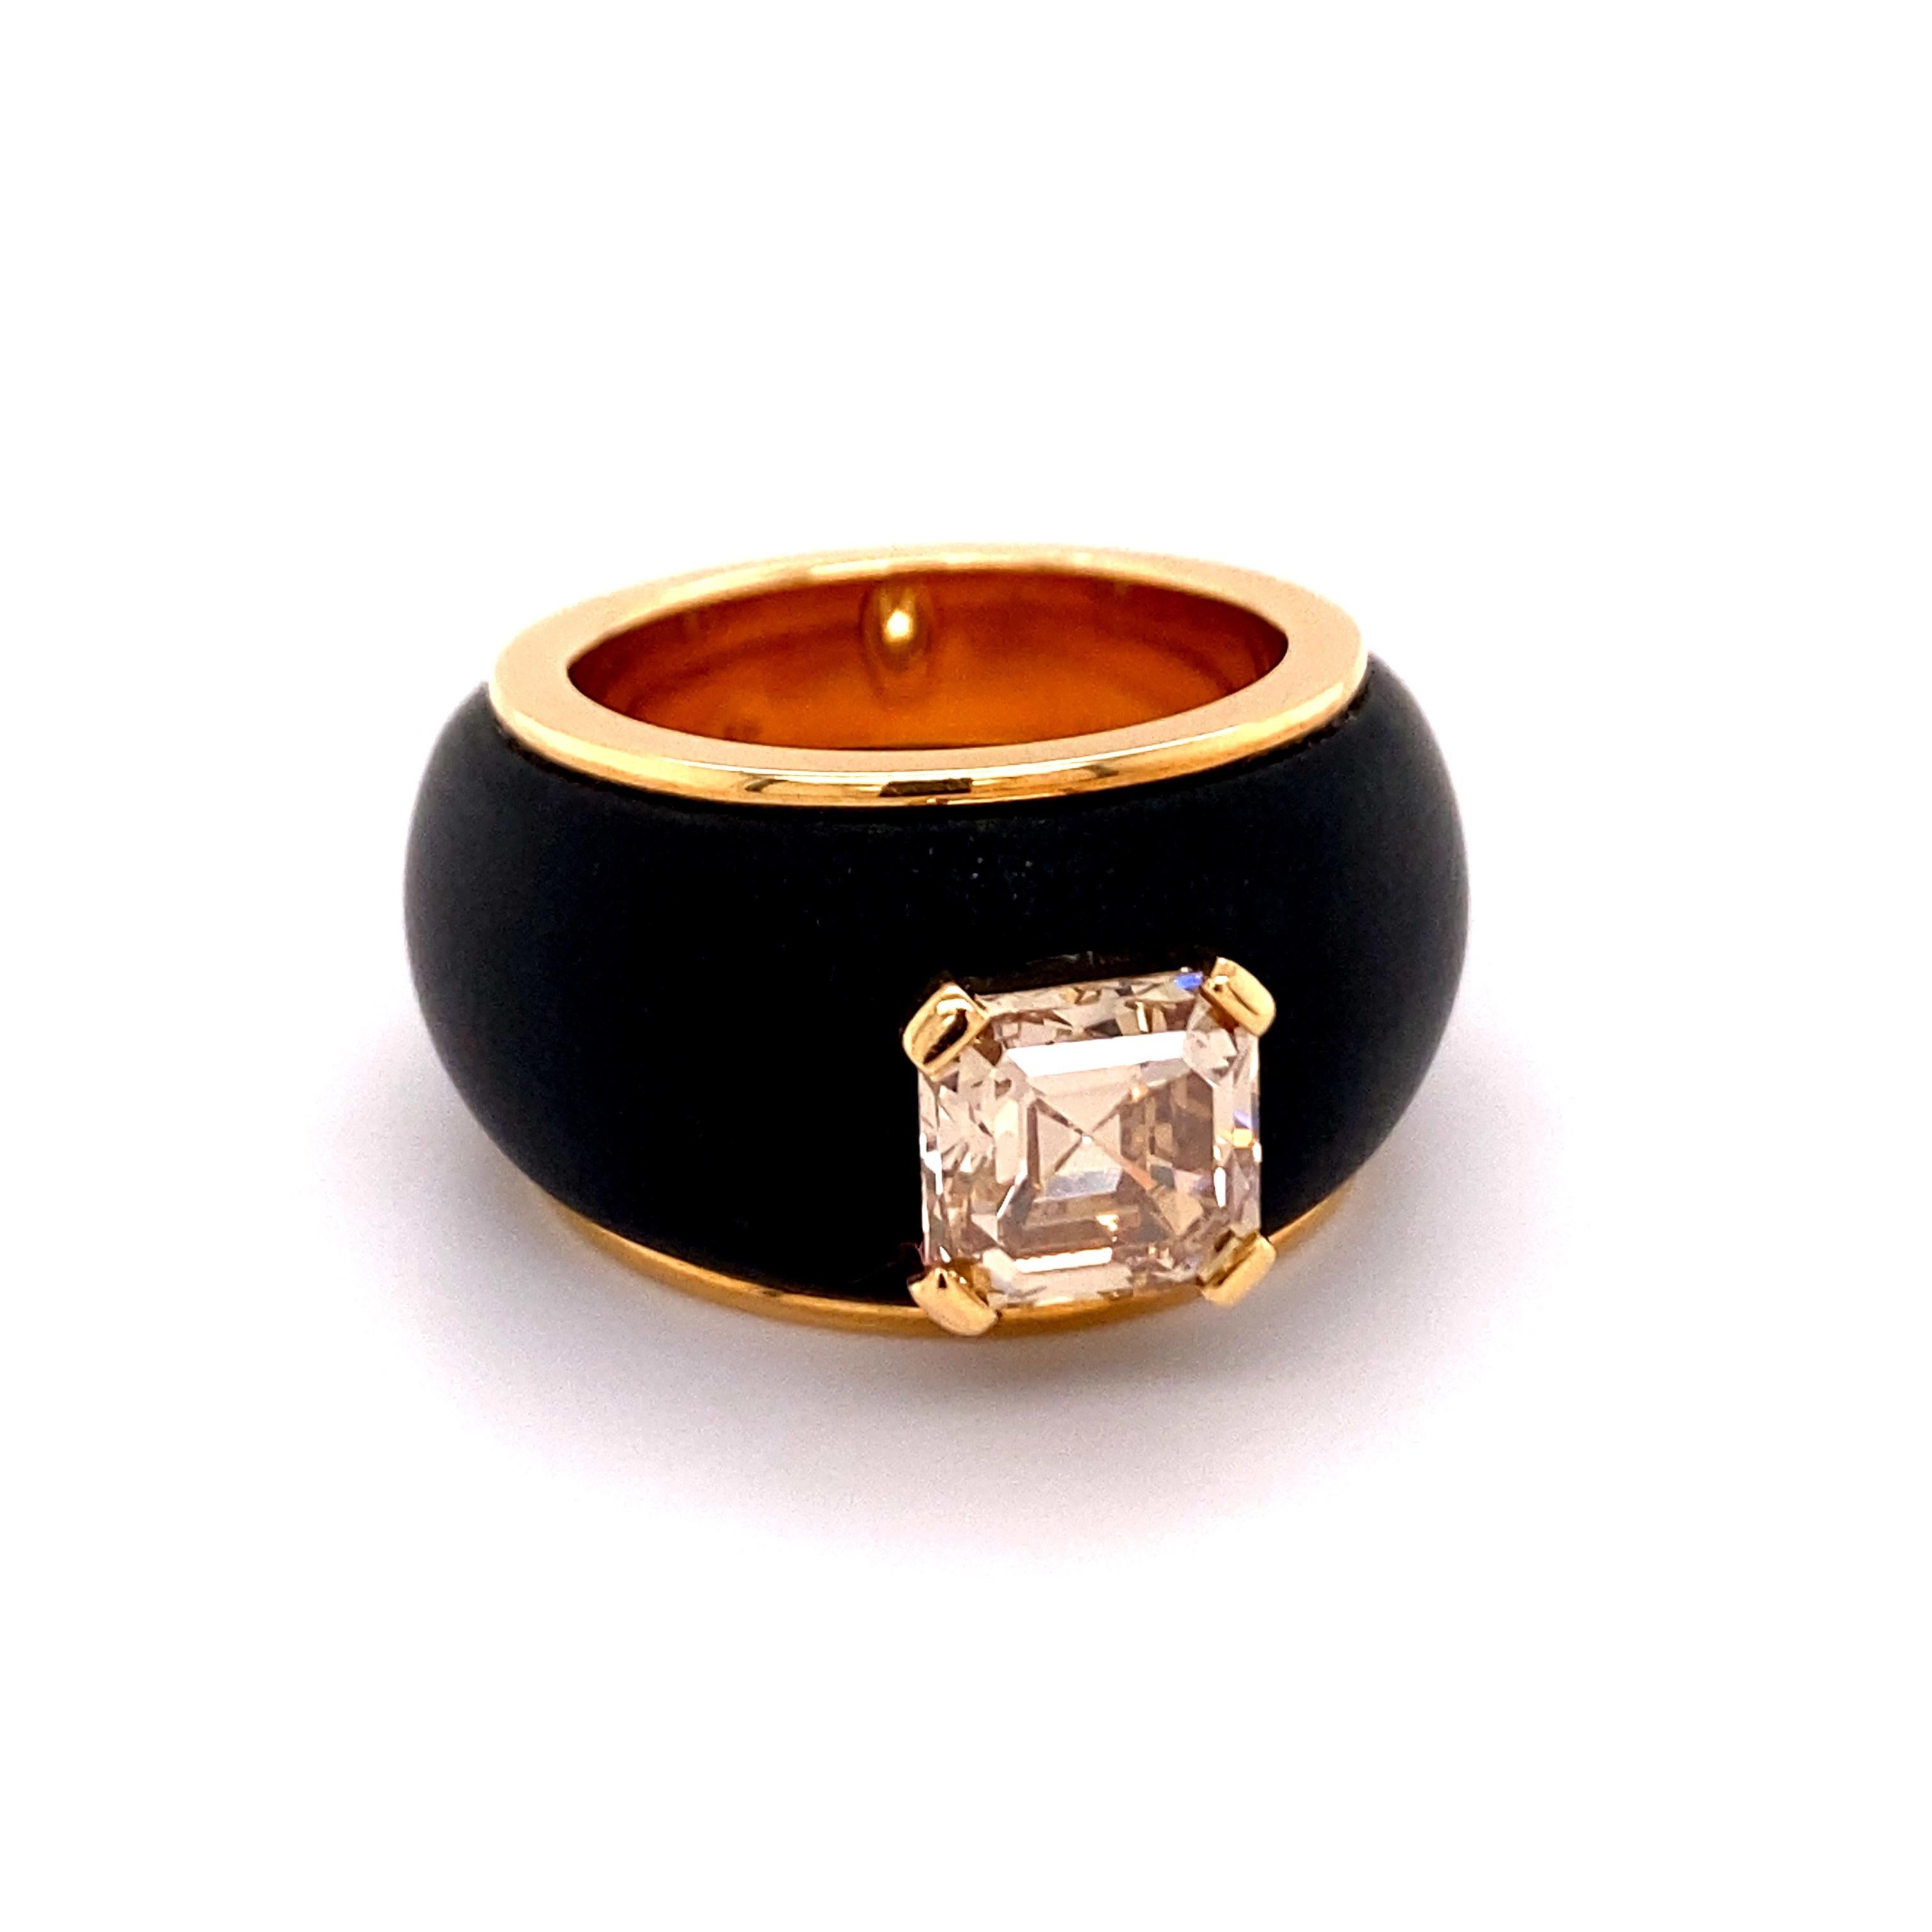 Dieser Ring besticht durch sein schlichtes und modernes Design.
Der ausgefallene hellbraune Diamant im Assher-Schliff mit einem Gewicht von 2,65 ct und der Qualität si1 ist vom Schweizerischen Gemmologischen Institut zertifiziert.
Der